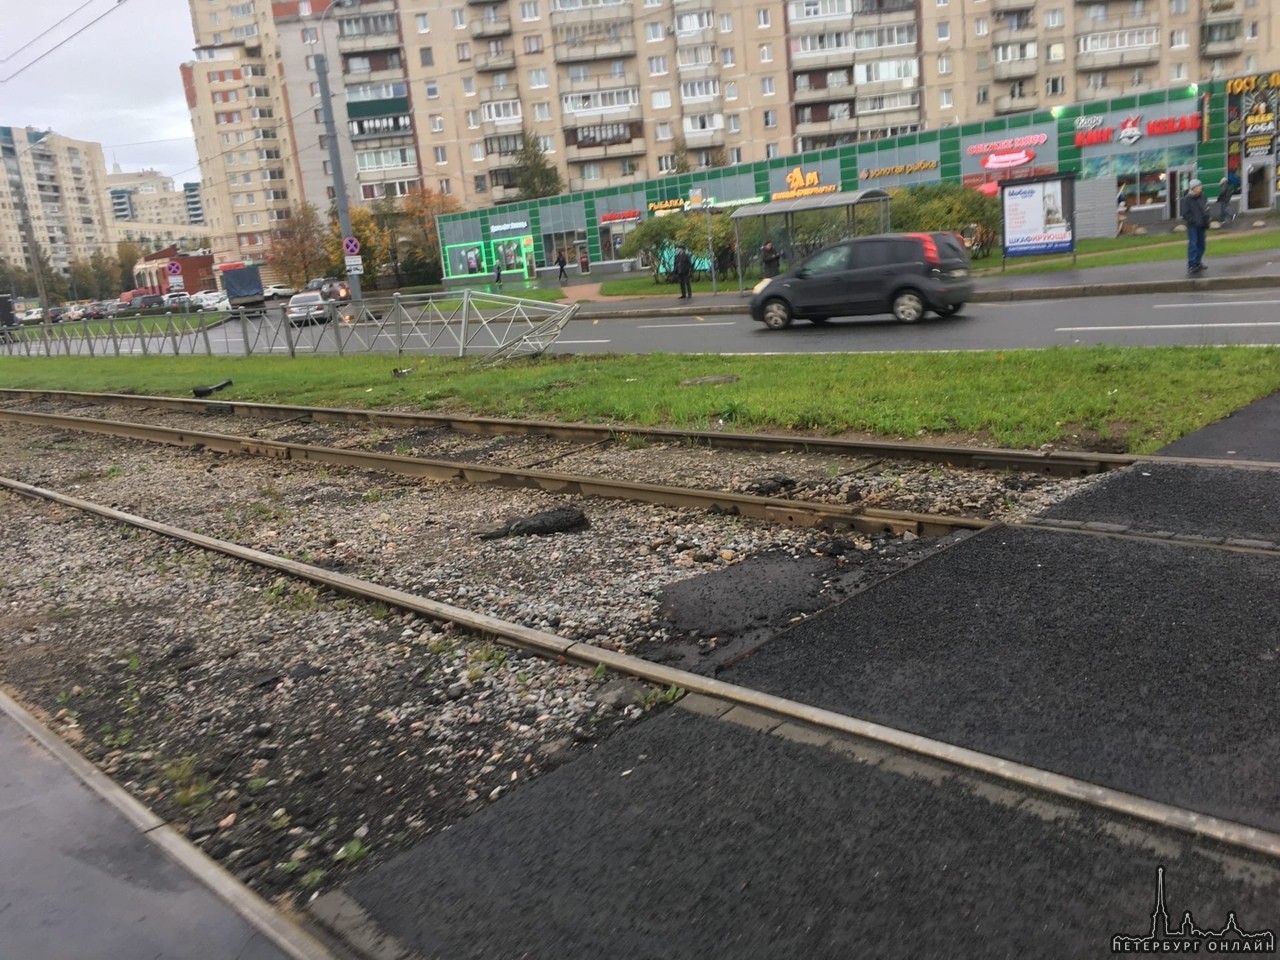 Маленький Peugeot ждёт трамвая Стародеревенской рядом с Камышовой